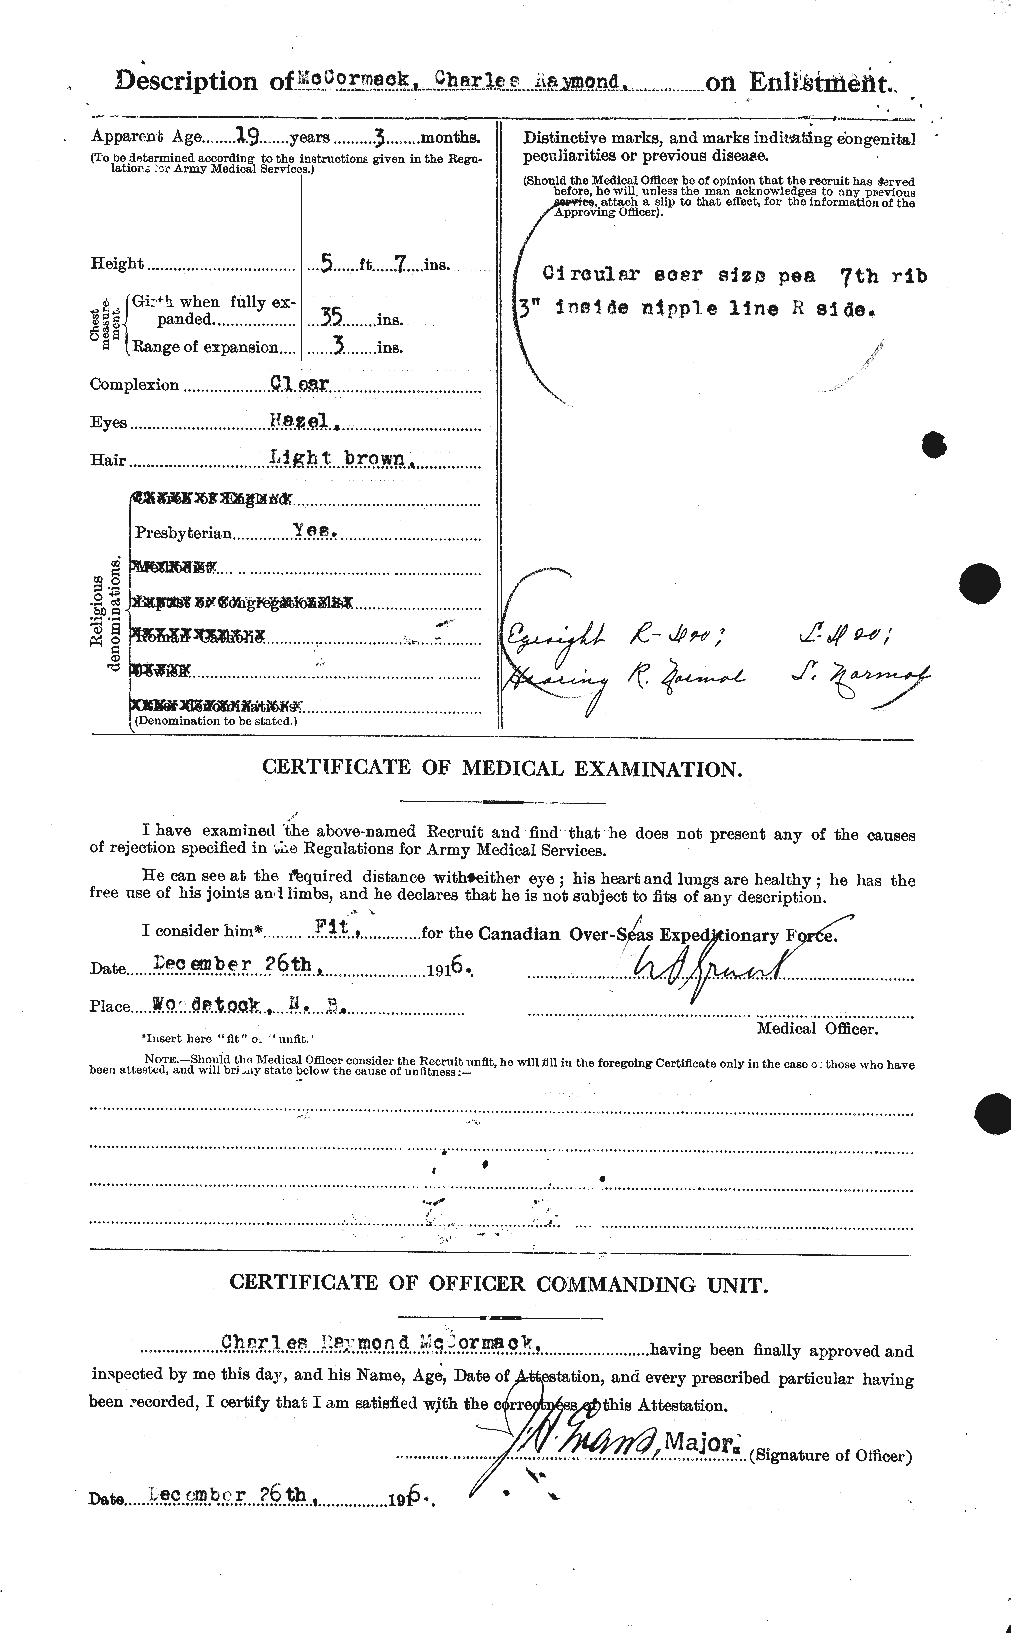 Dossiers du Personnel de la Première Guerre mondiale - CEC 134069b